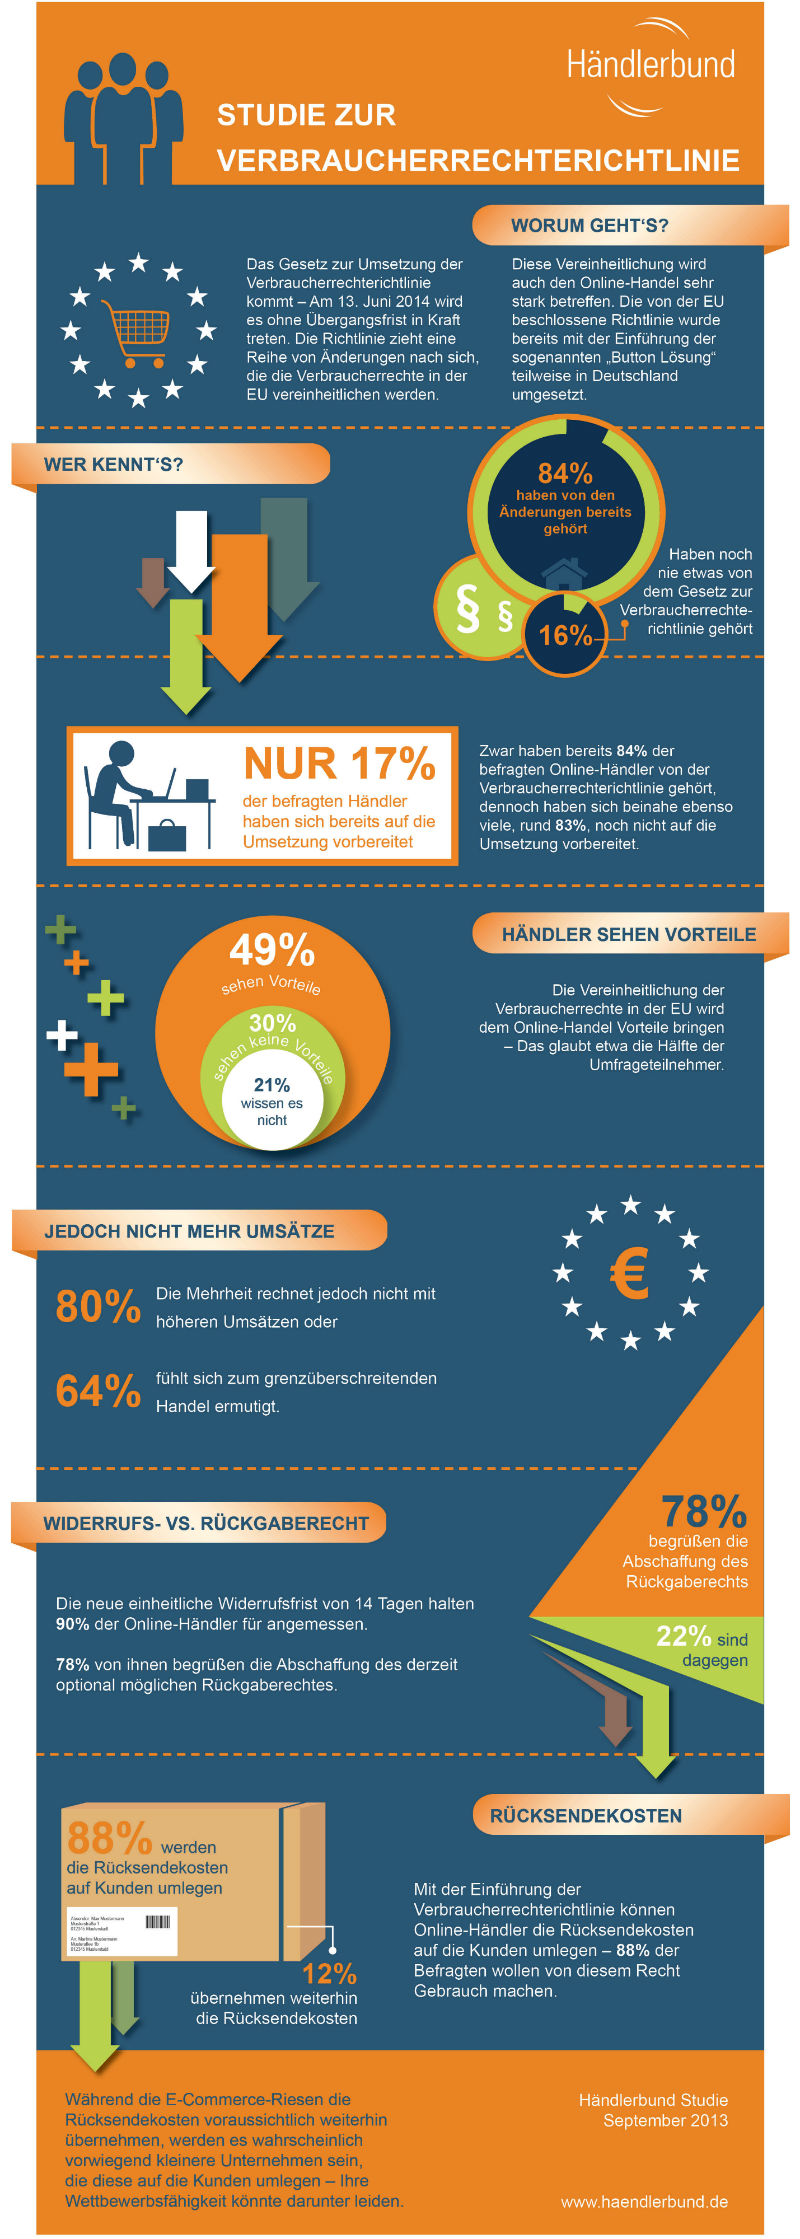 Infografik Verbraucherrechterichtlinie